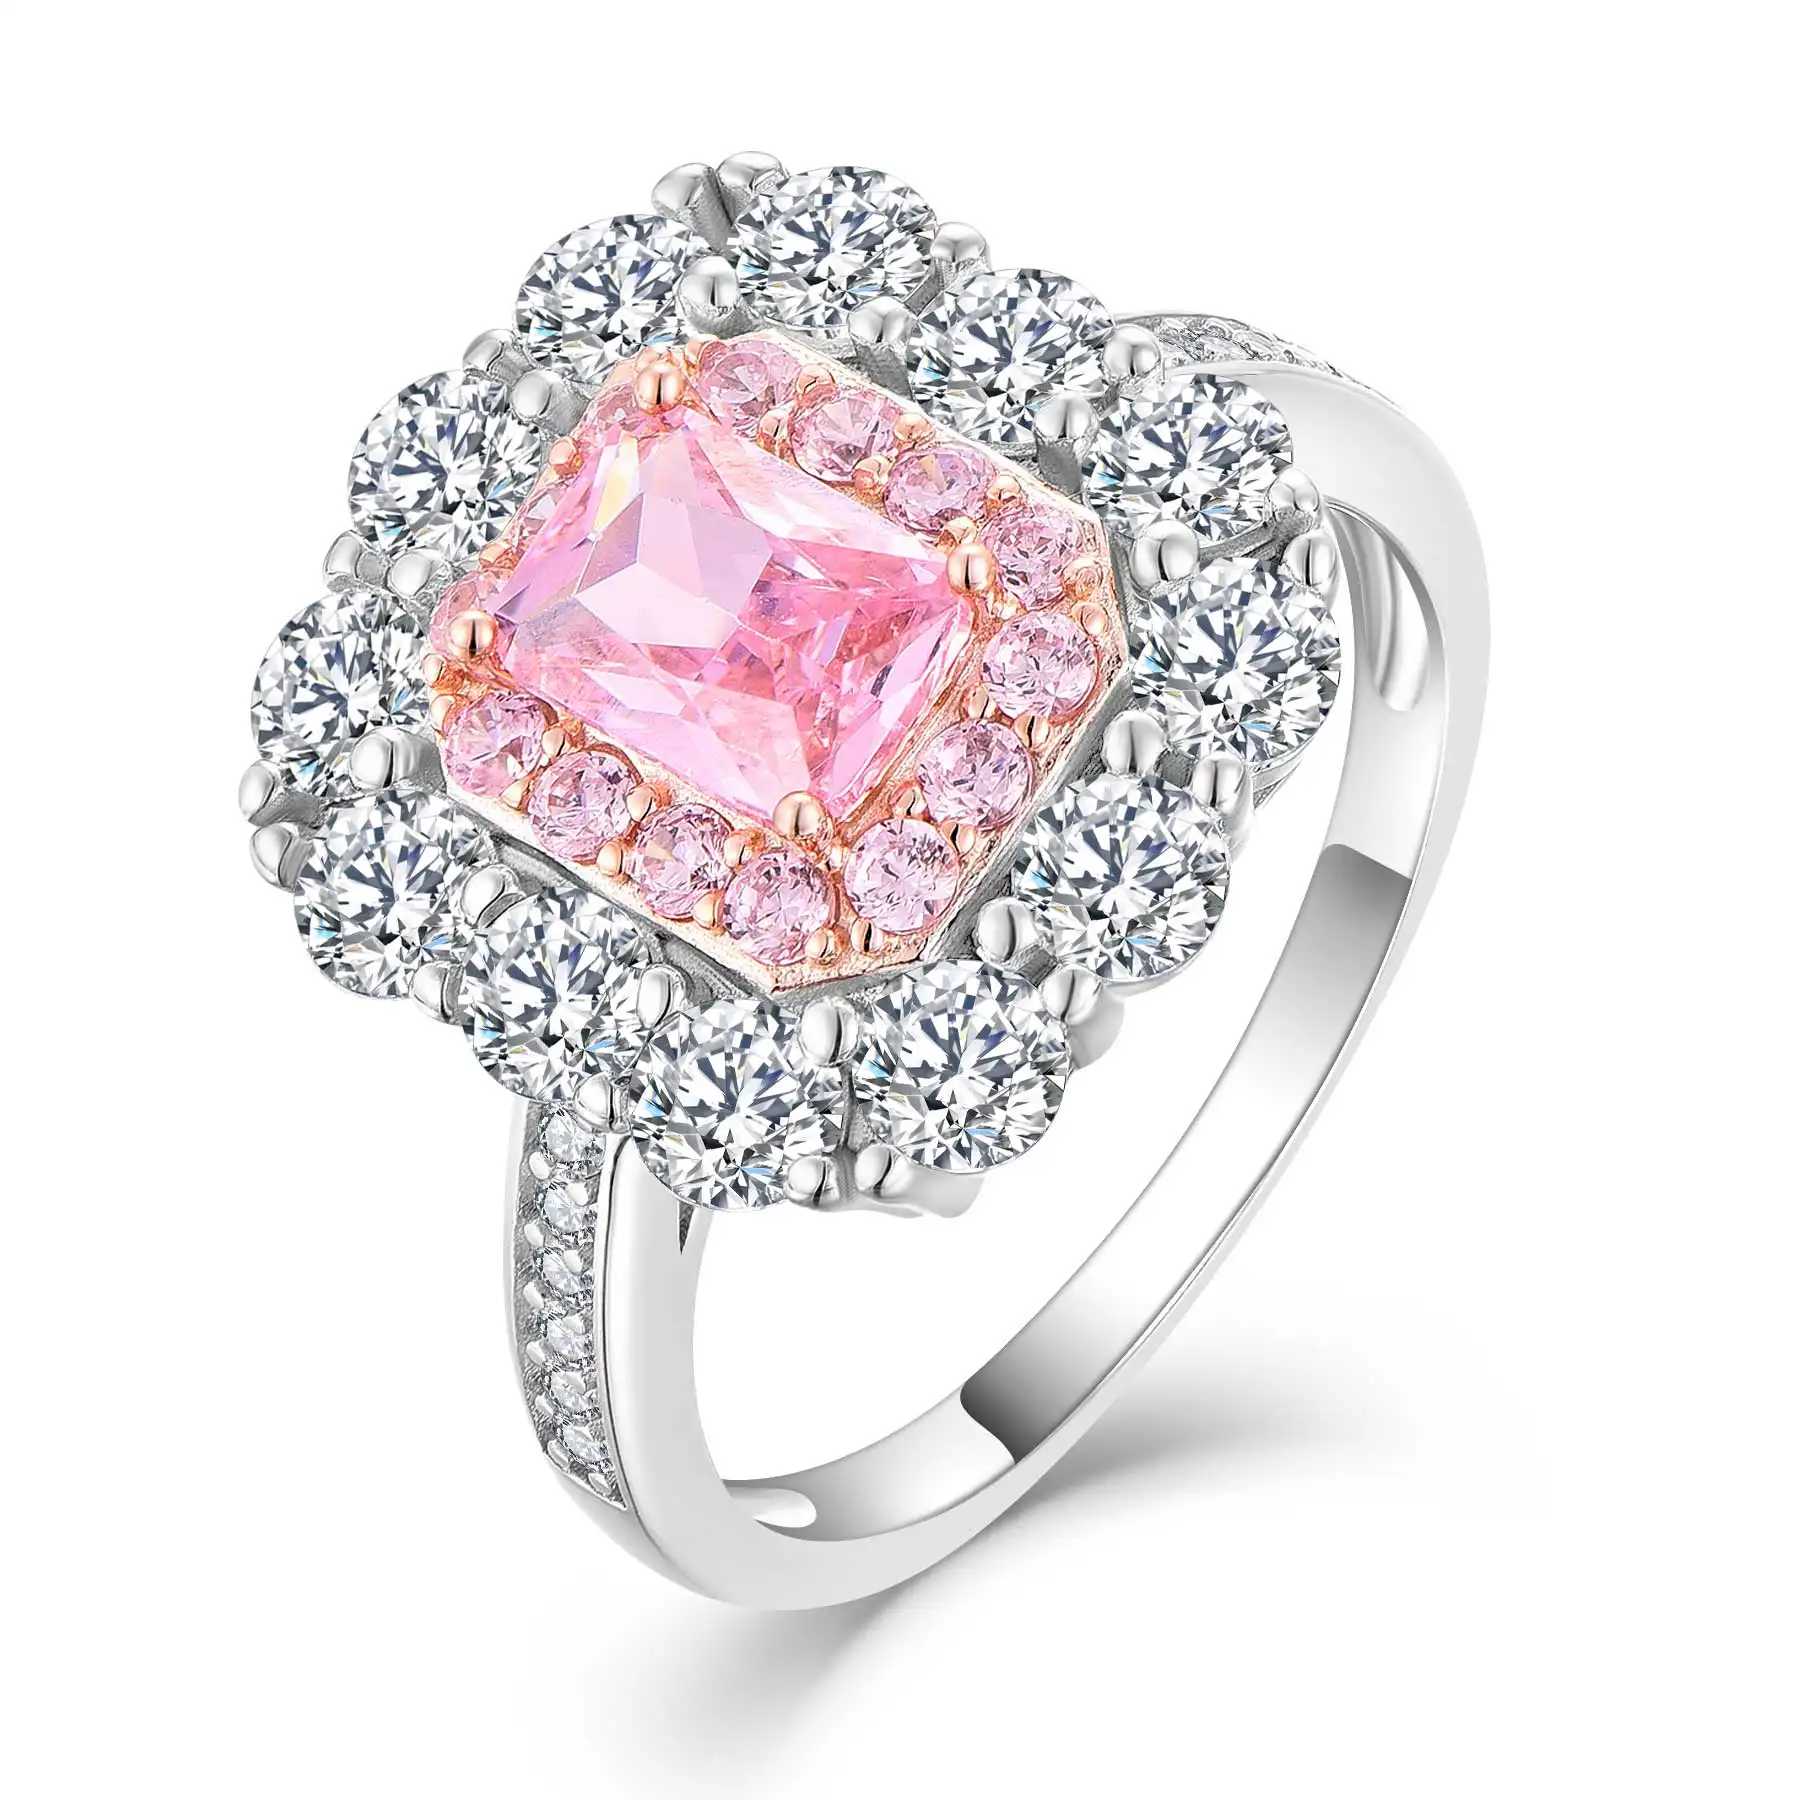 QX Custom OEM gioielli pregiati all'ingrosso 925 argento Sterling rosa zirconi anelli di fidanzamento per donna uomo